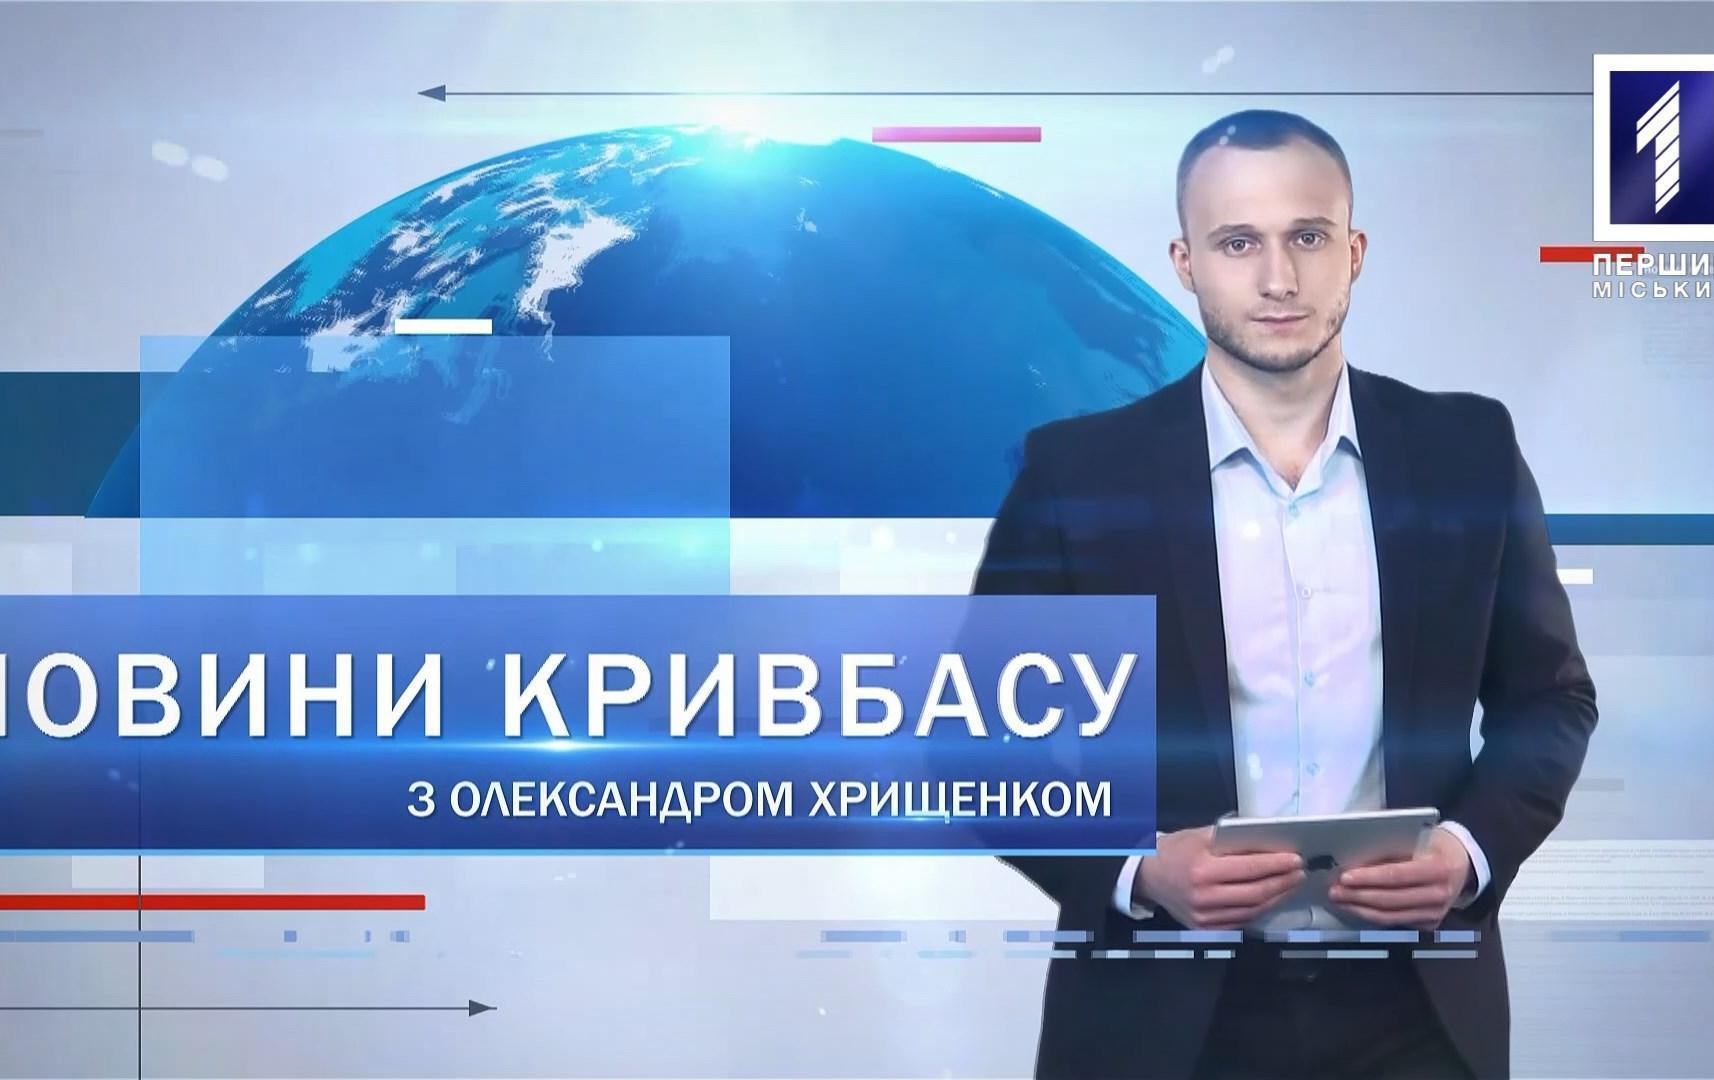 Новини Кривбасу 28 травня: електронний підпис та печатка, школяр розбився на смерть, ПК «Карачуни»